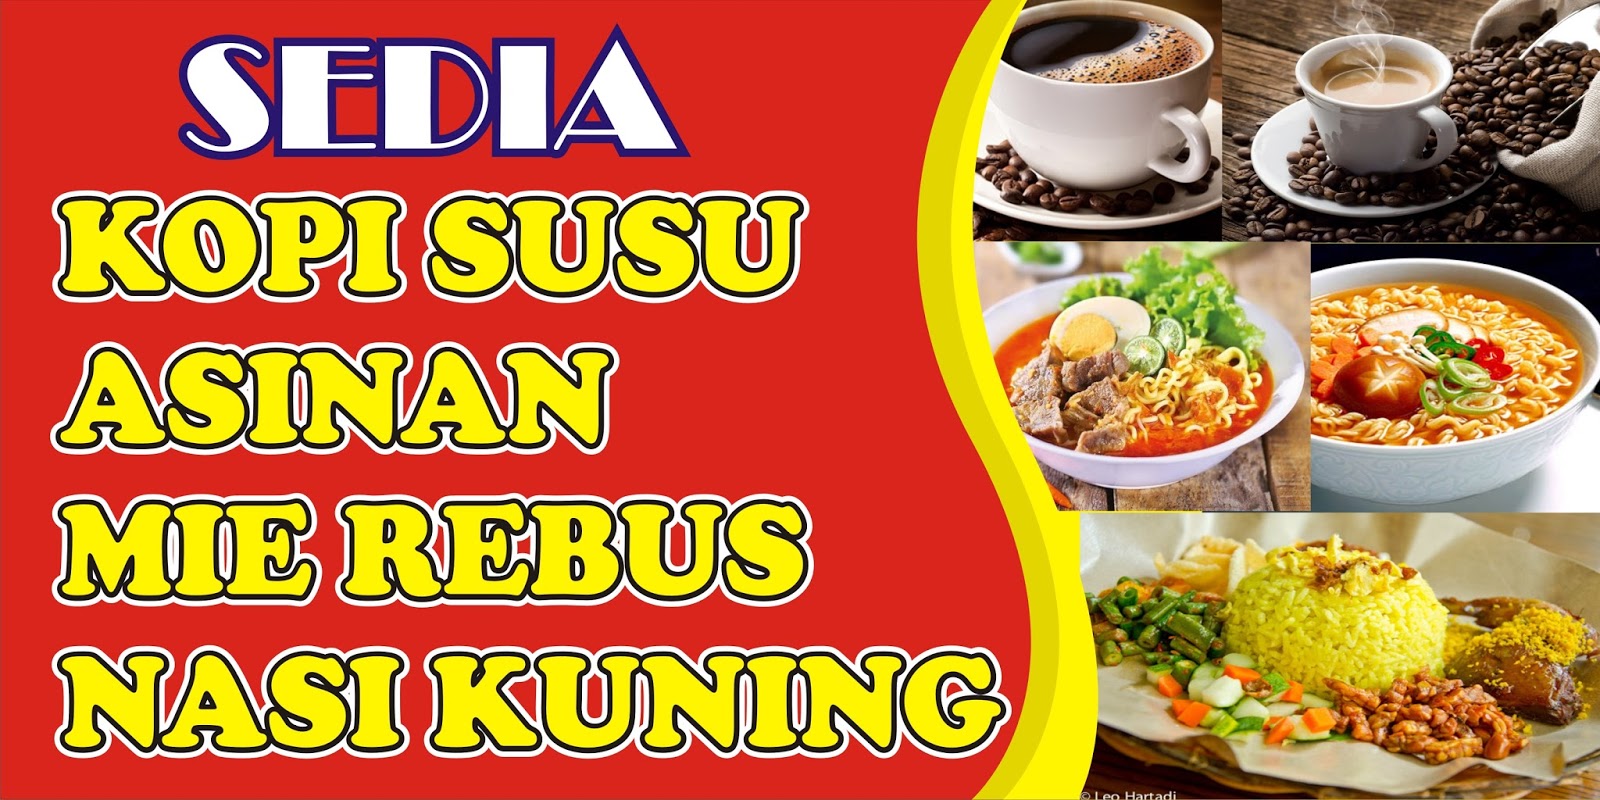 Download Contoh Spanduk Warung Kopi.cdr  KARYAKU